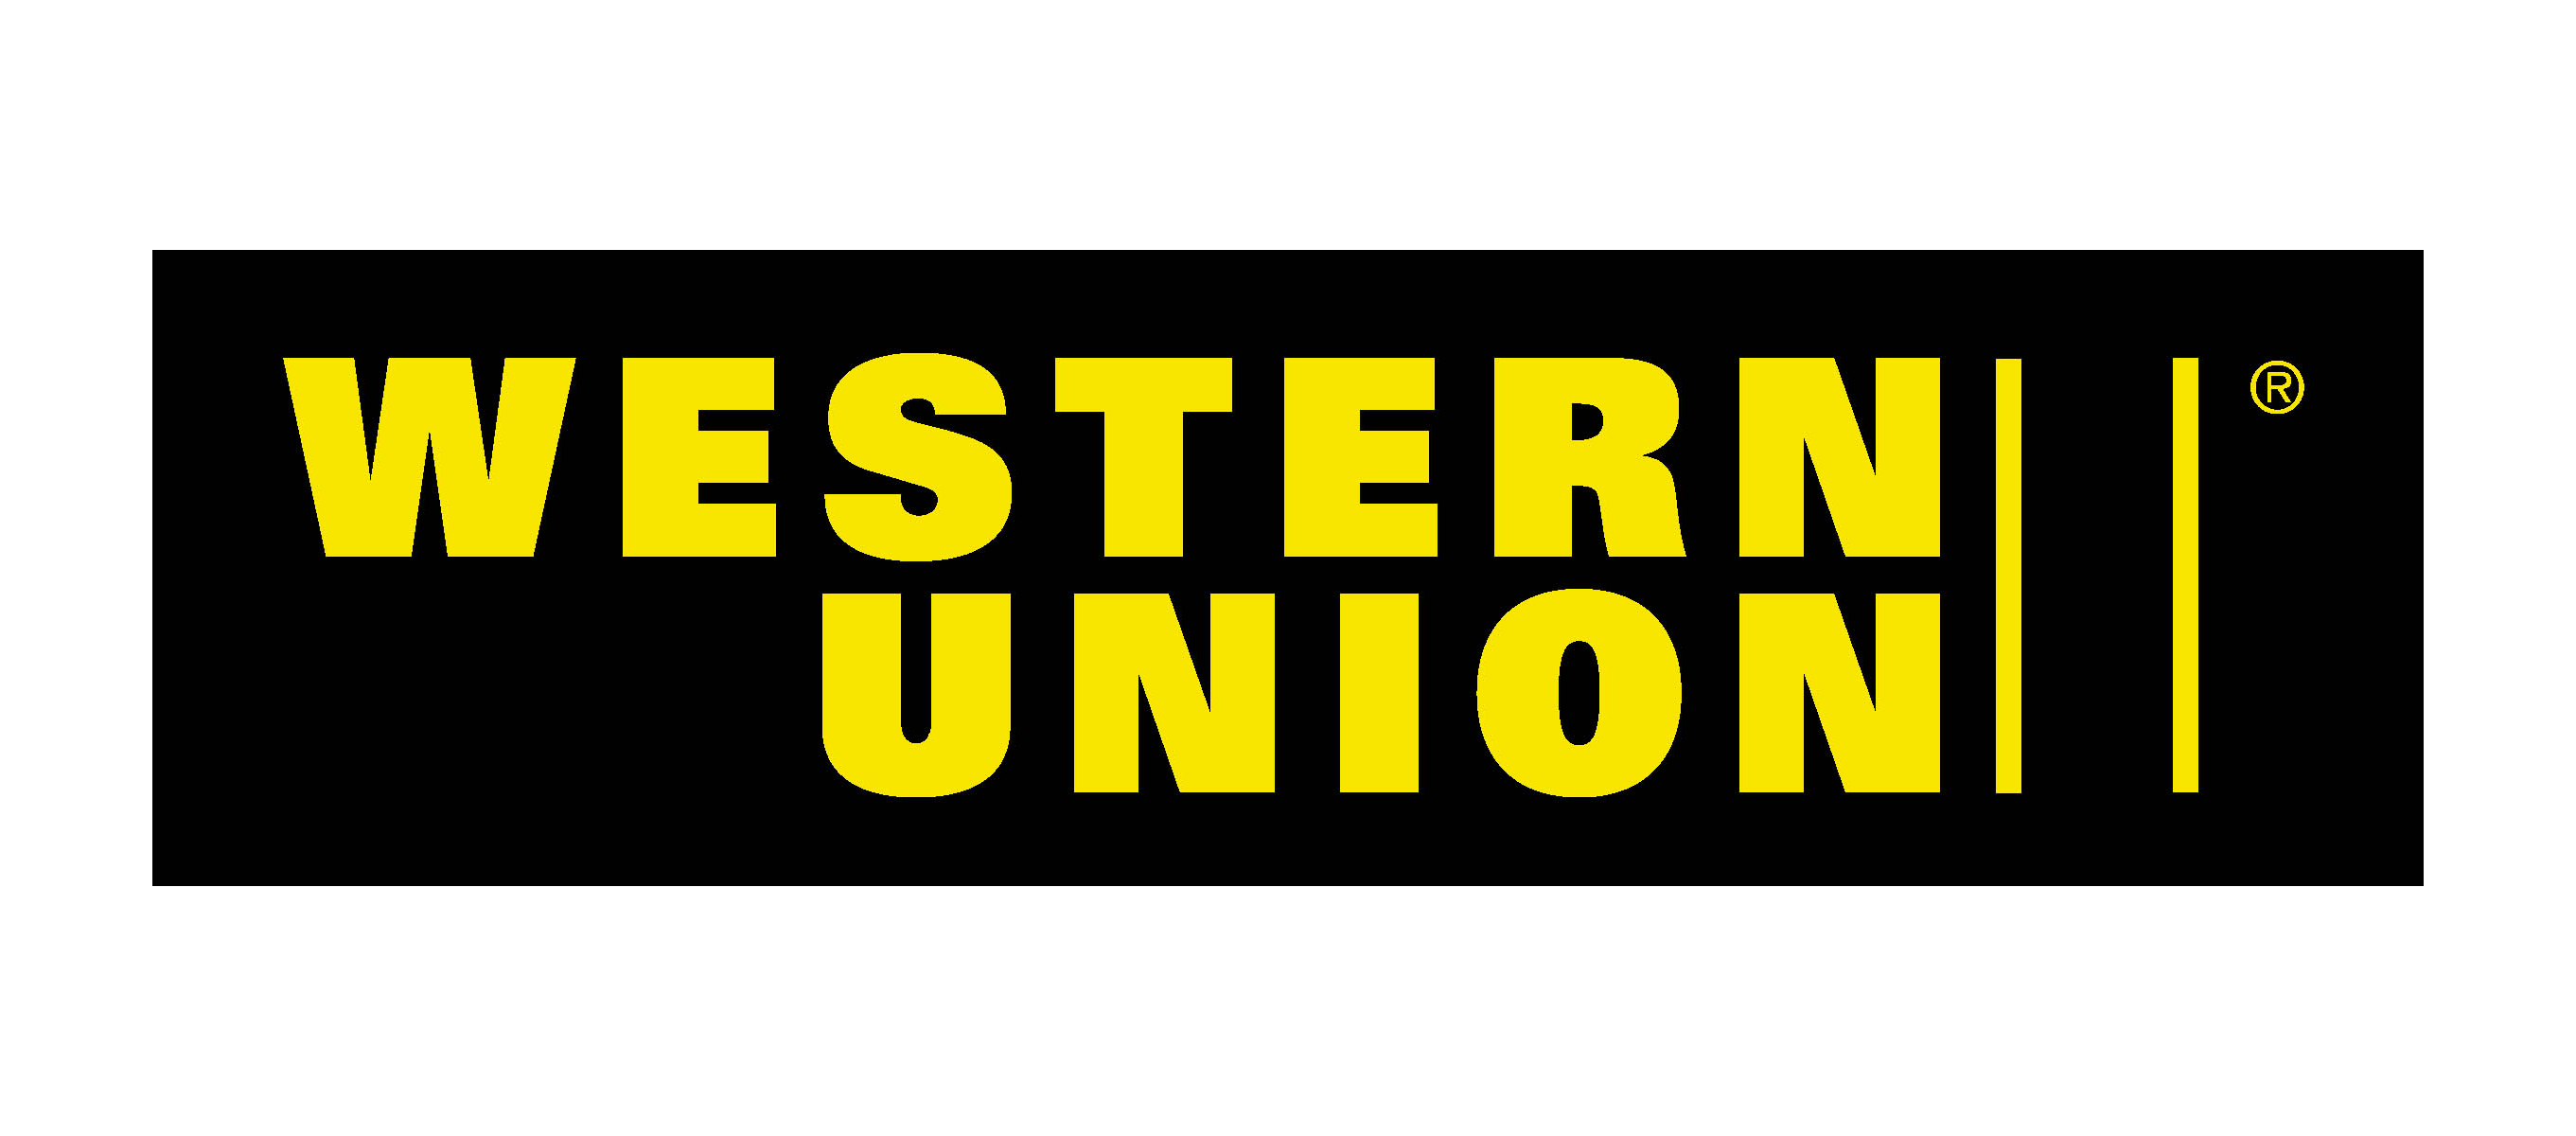 Western Union debe pagar unos US$600 millones por fallas en los controles antilavado, antifraude y supervisión de agentes - CFCS | Asociación de Especialistas Certificados en Delitos Financieros